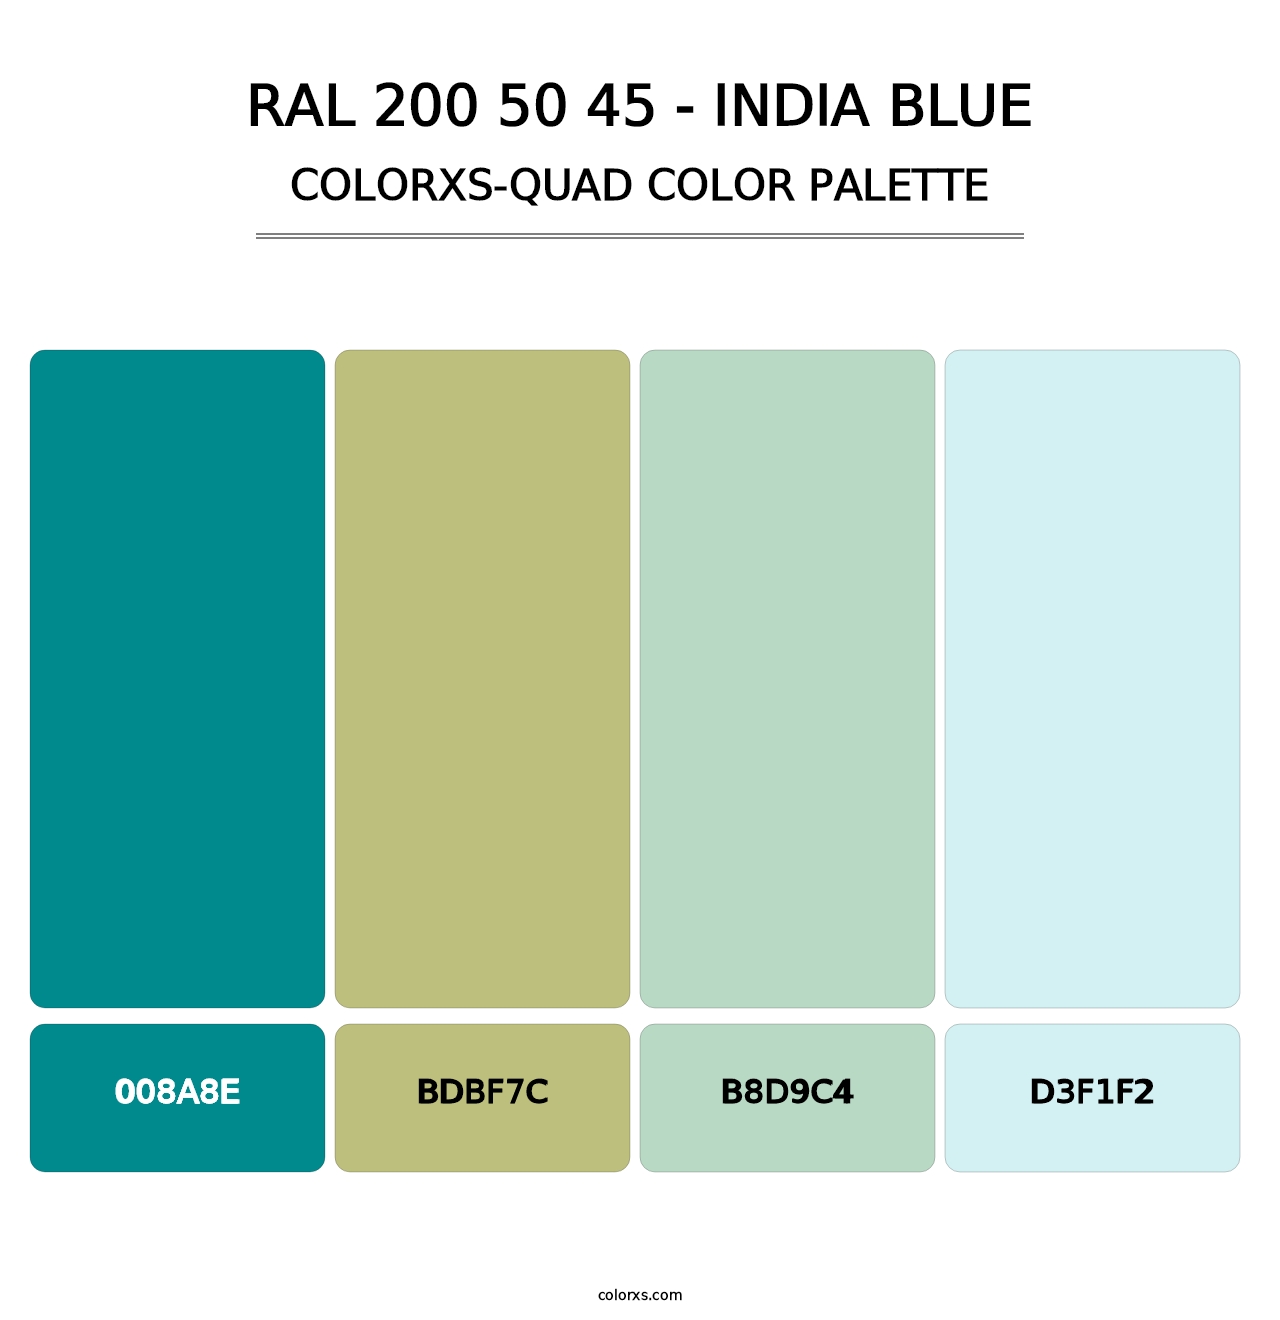 RAL 200 50 45 - India Blue - Colorxs Quad Palette